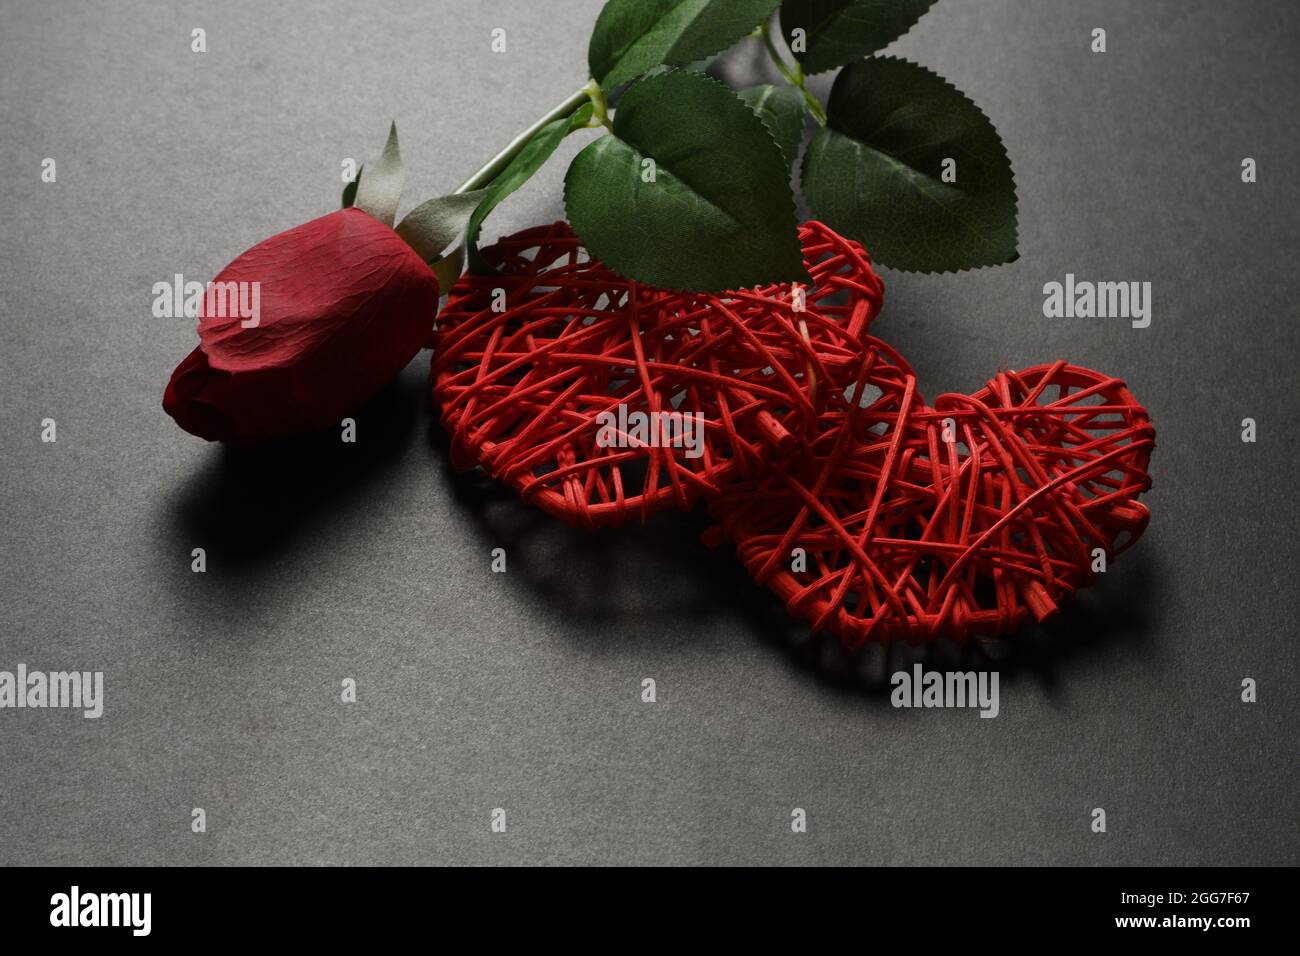 Zwei rote Herzen und eine rote Rose auf dunklem Grund. Stockfoto